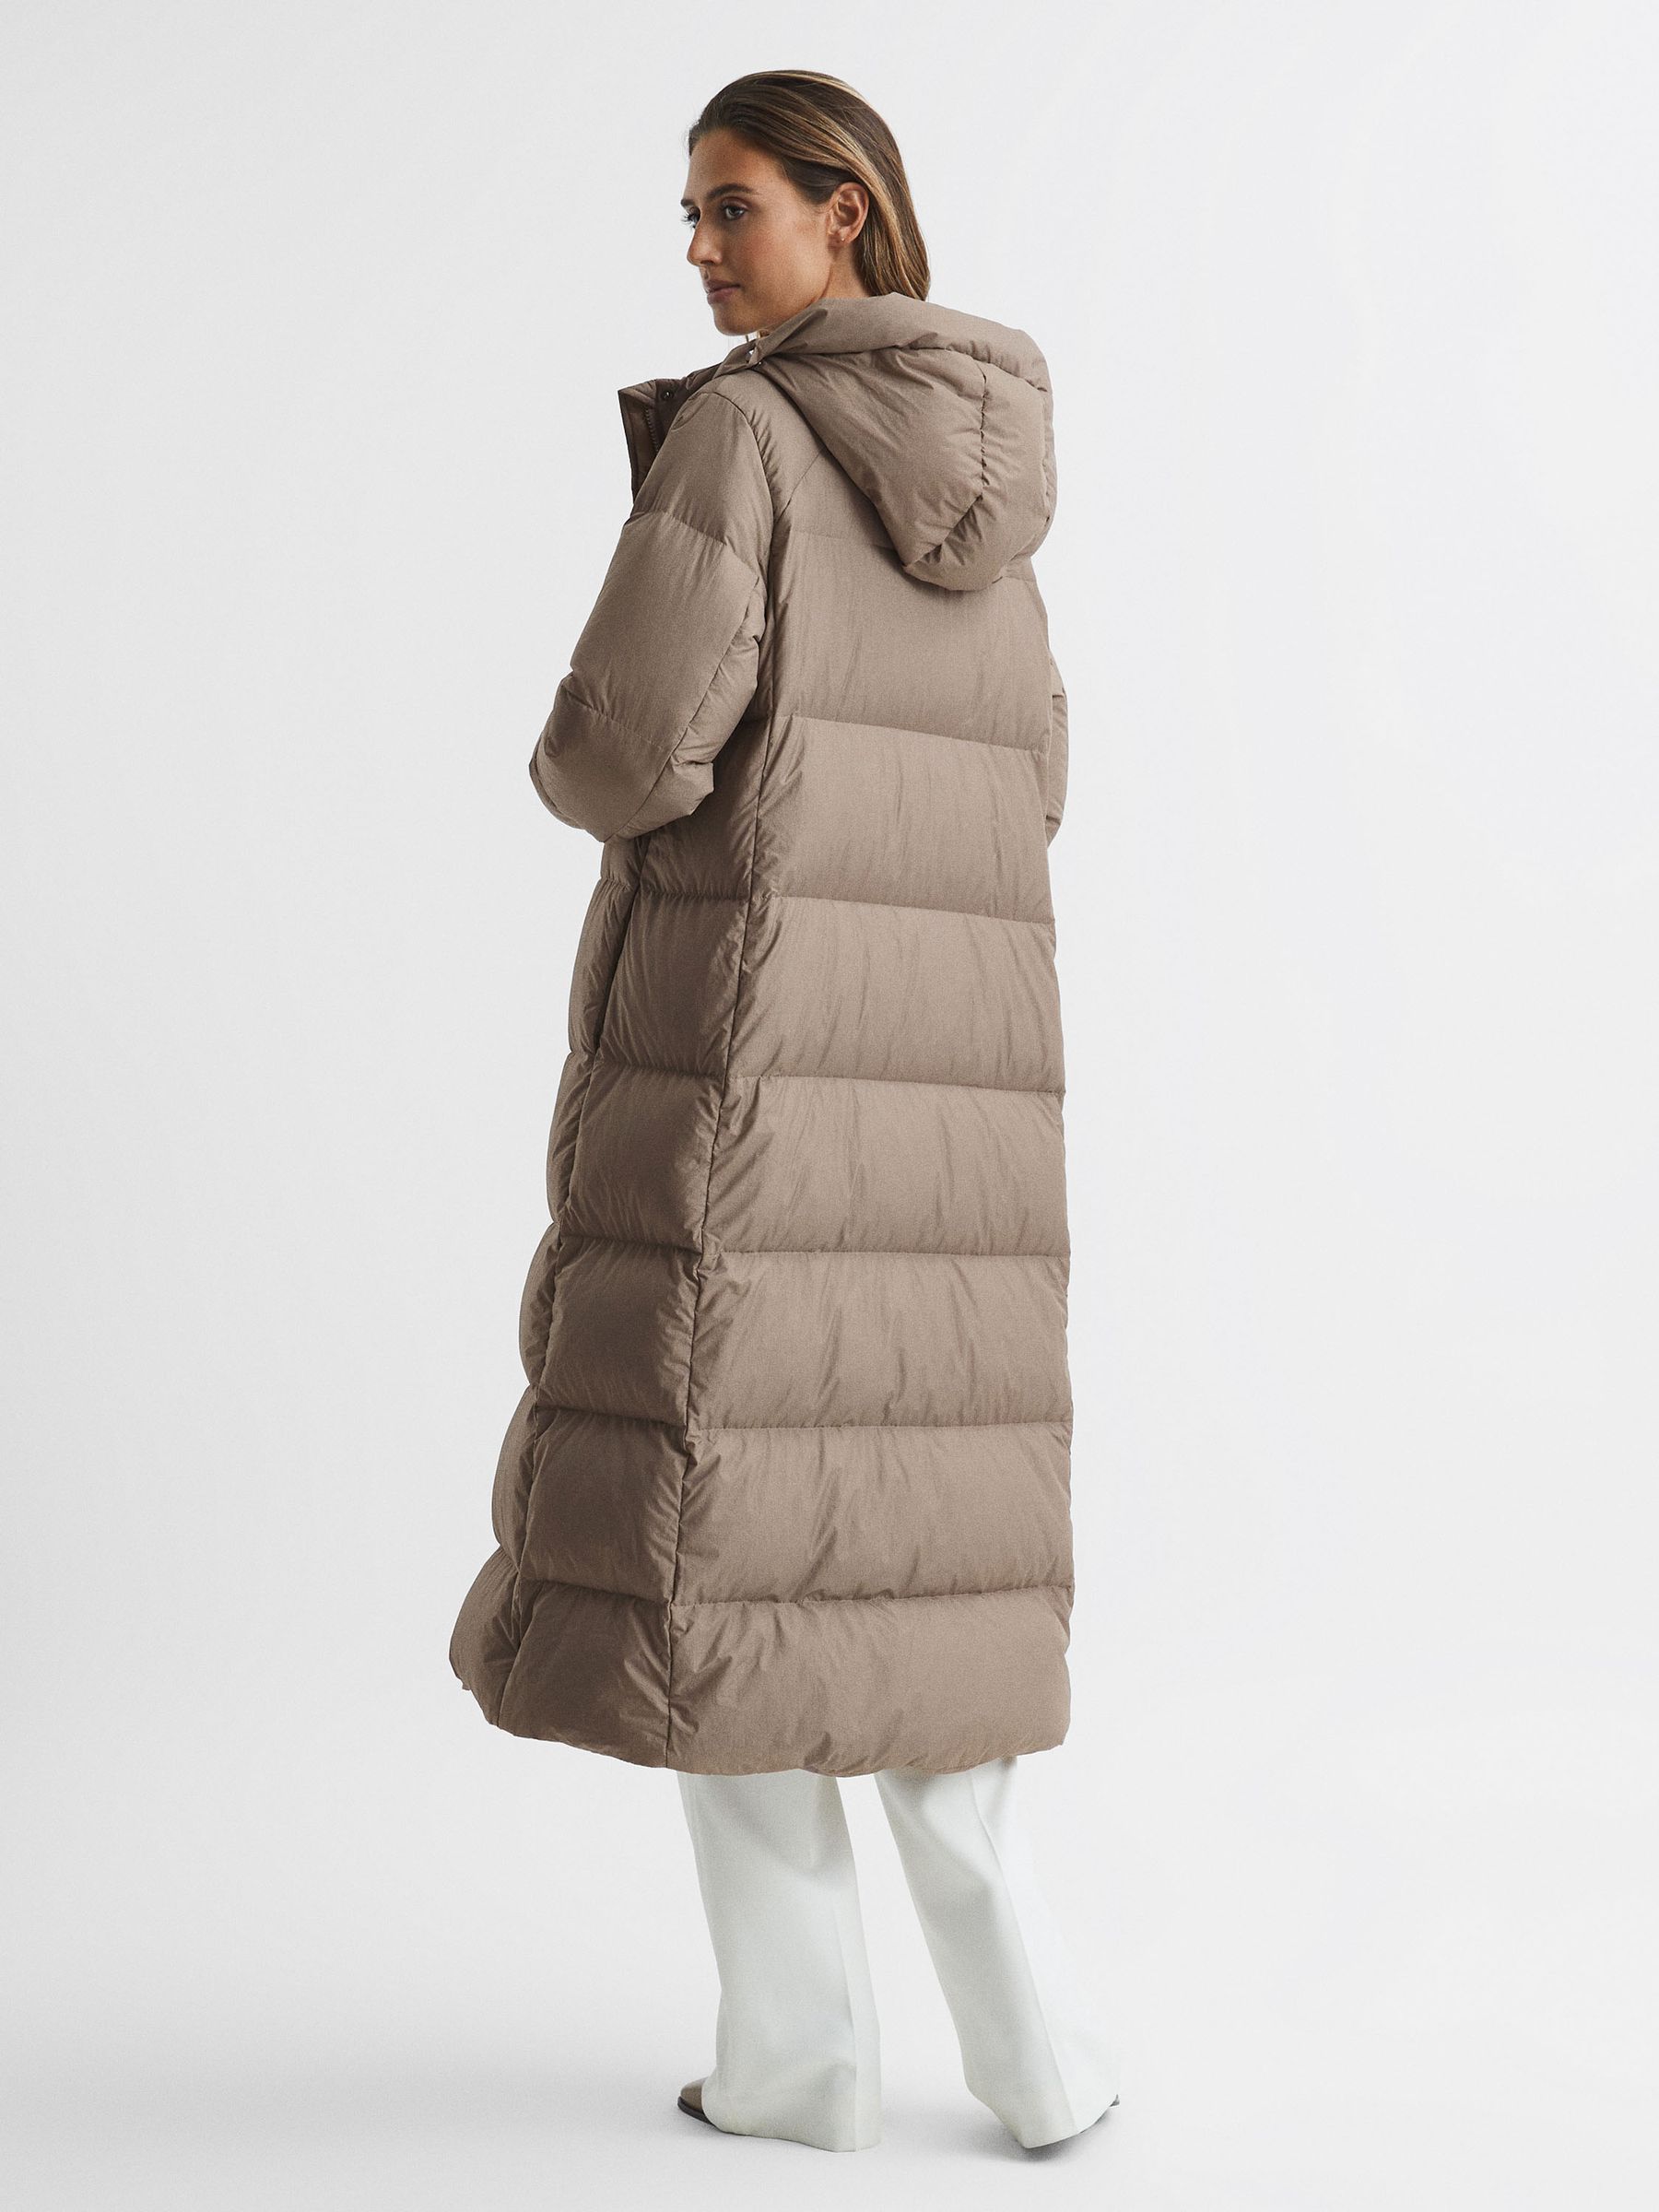 Reiss Tilde Longline Hooded Puffer Coat | REISS Netherlands